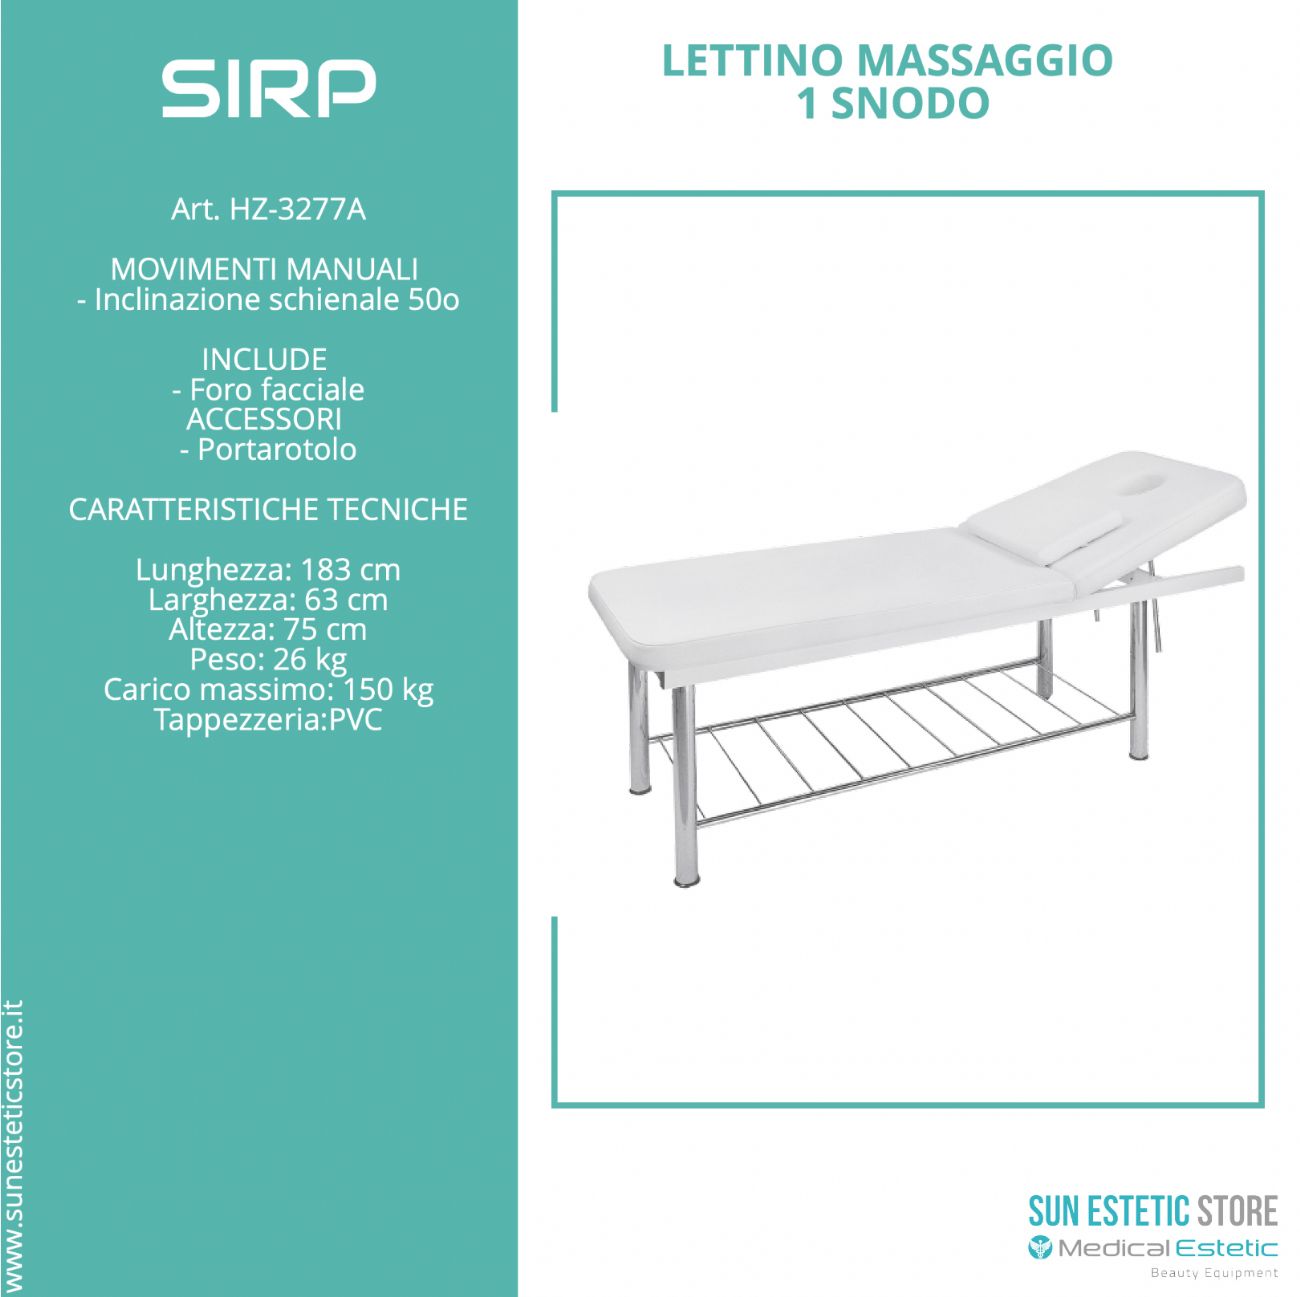 SIRP Lettino massaggio in metallo 1 snodo colore bianco